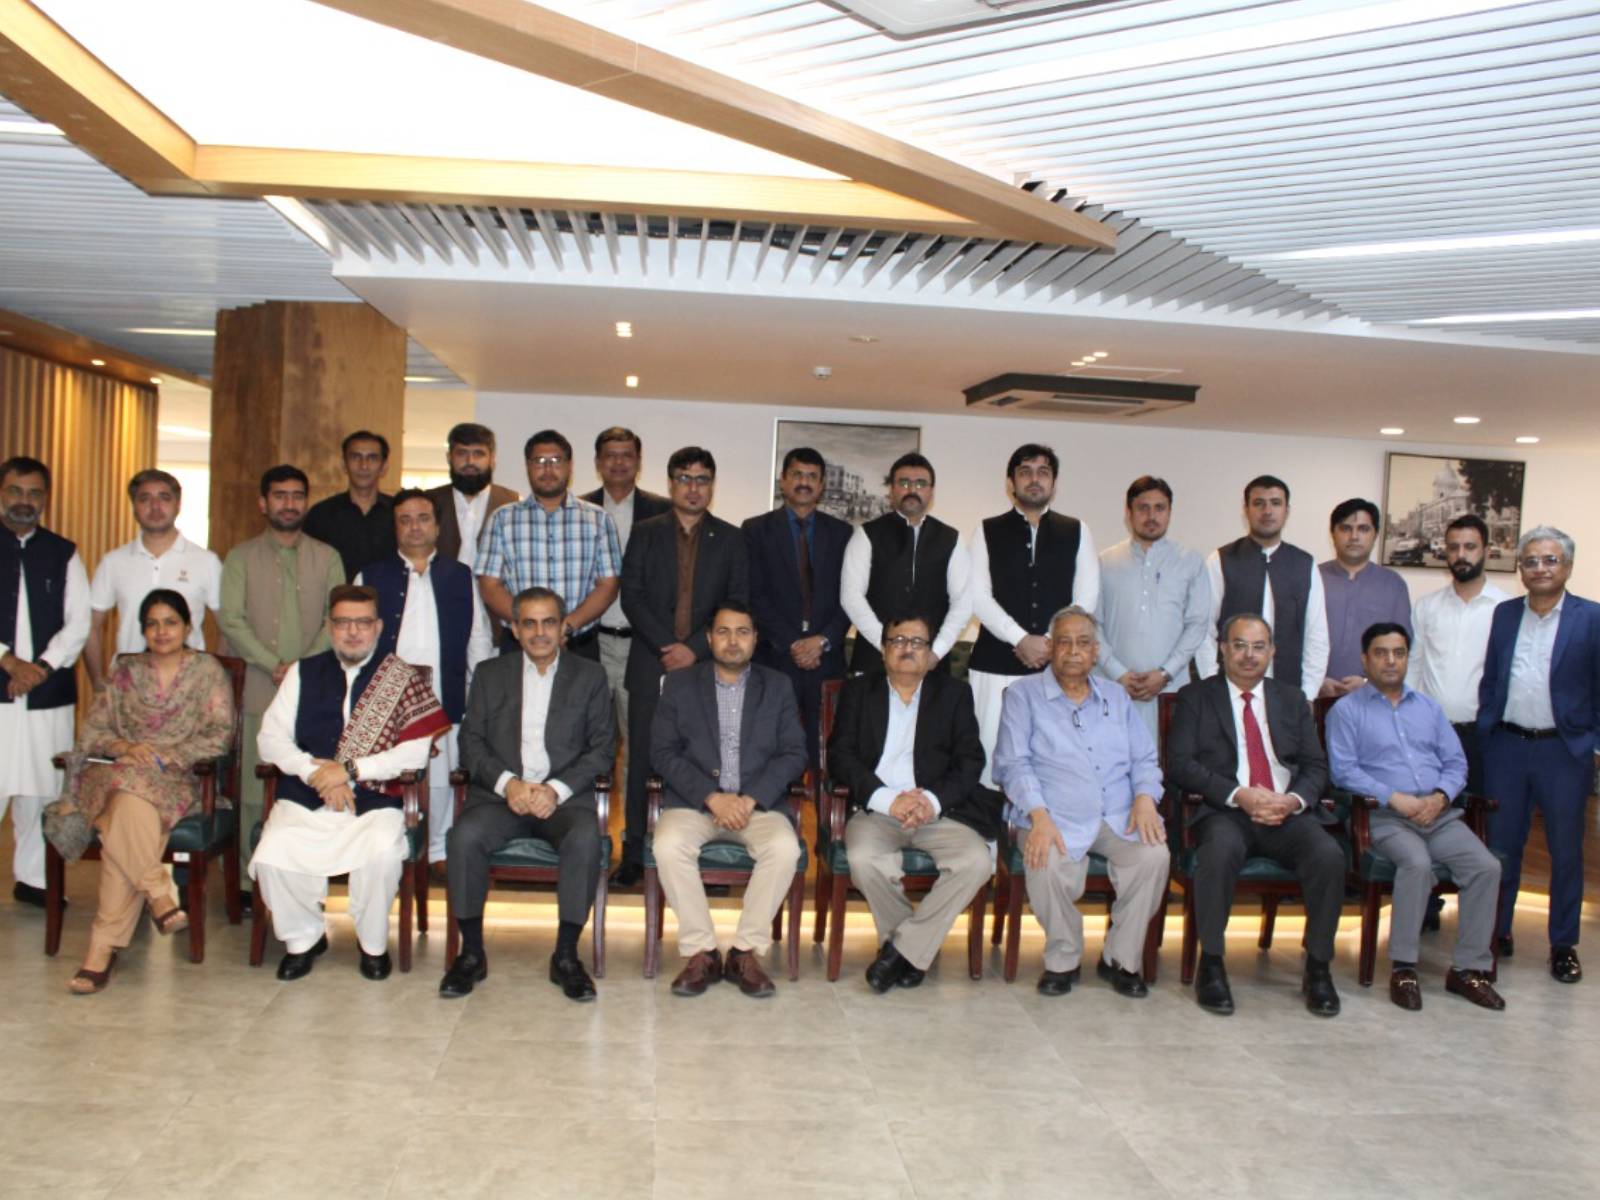 SRB hosted a KPRA delegation